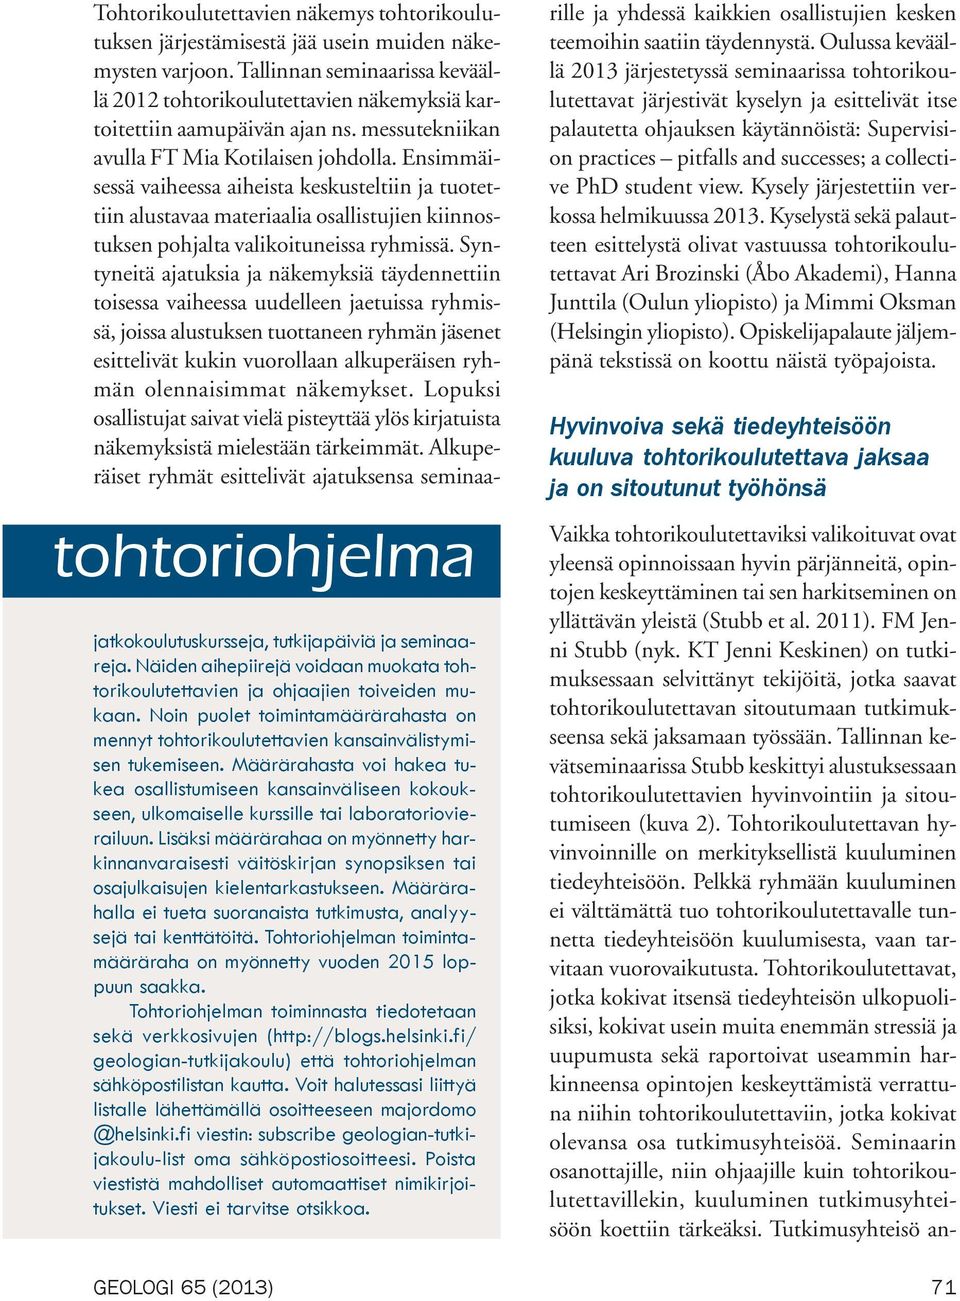 Tallinnan kevätseminaarissa Stubb keskittyi alustuksessaan tohtorikoulutettavien hyvinvointiin ja sitoutumiseen (kuva 2).